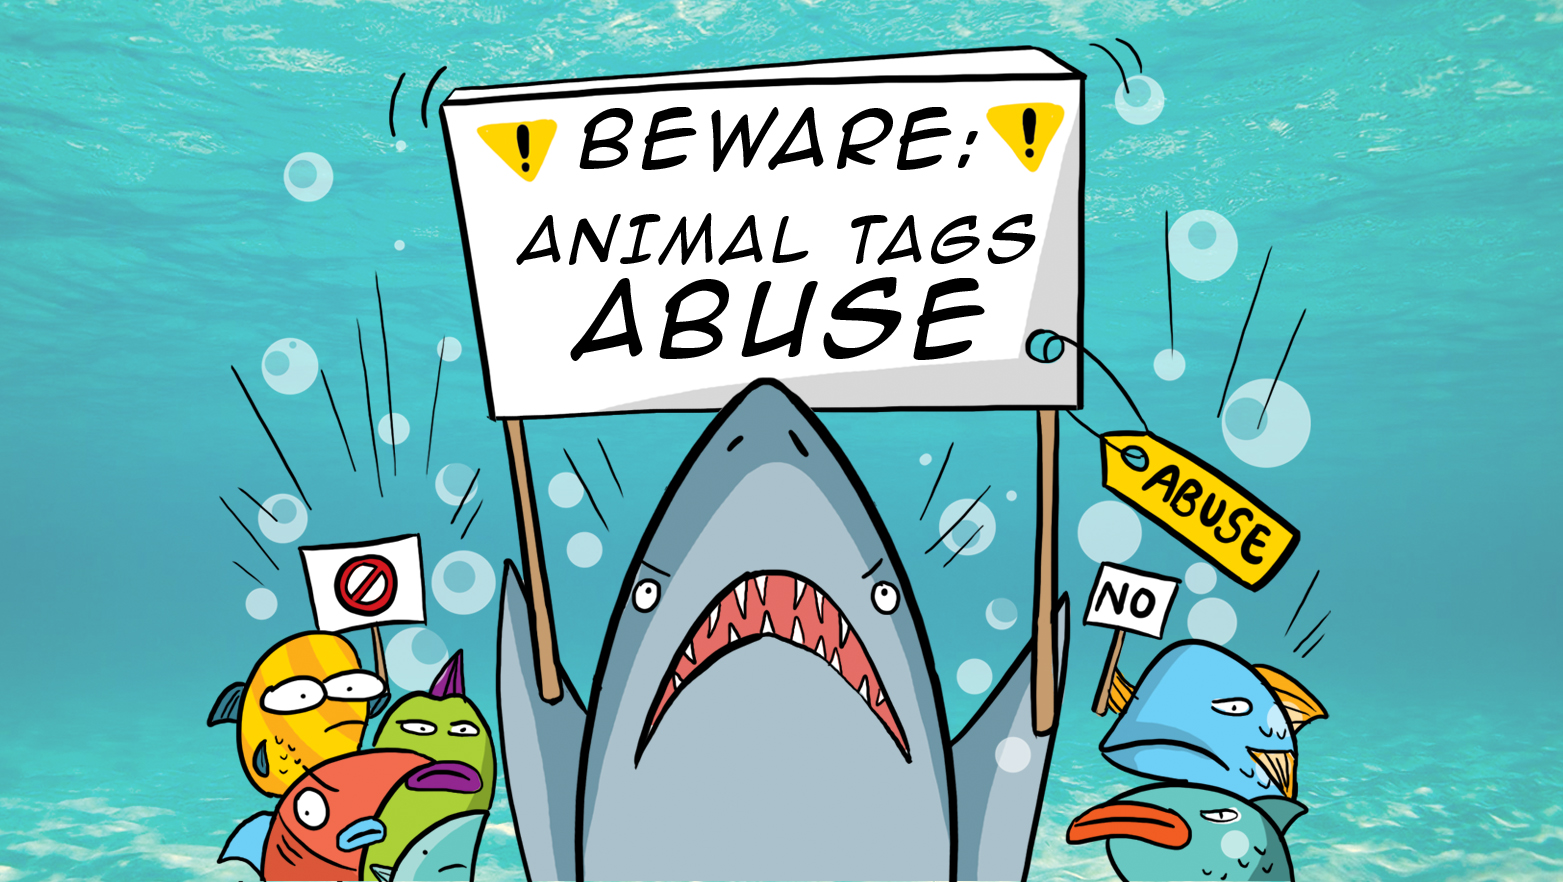 Animal tag abuse